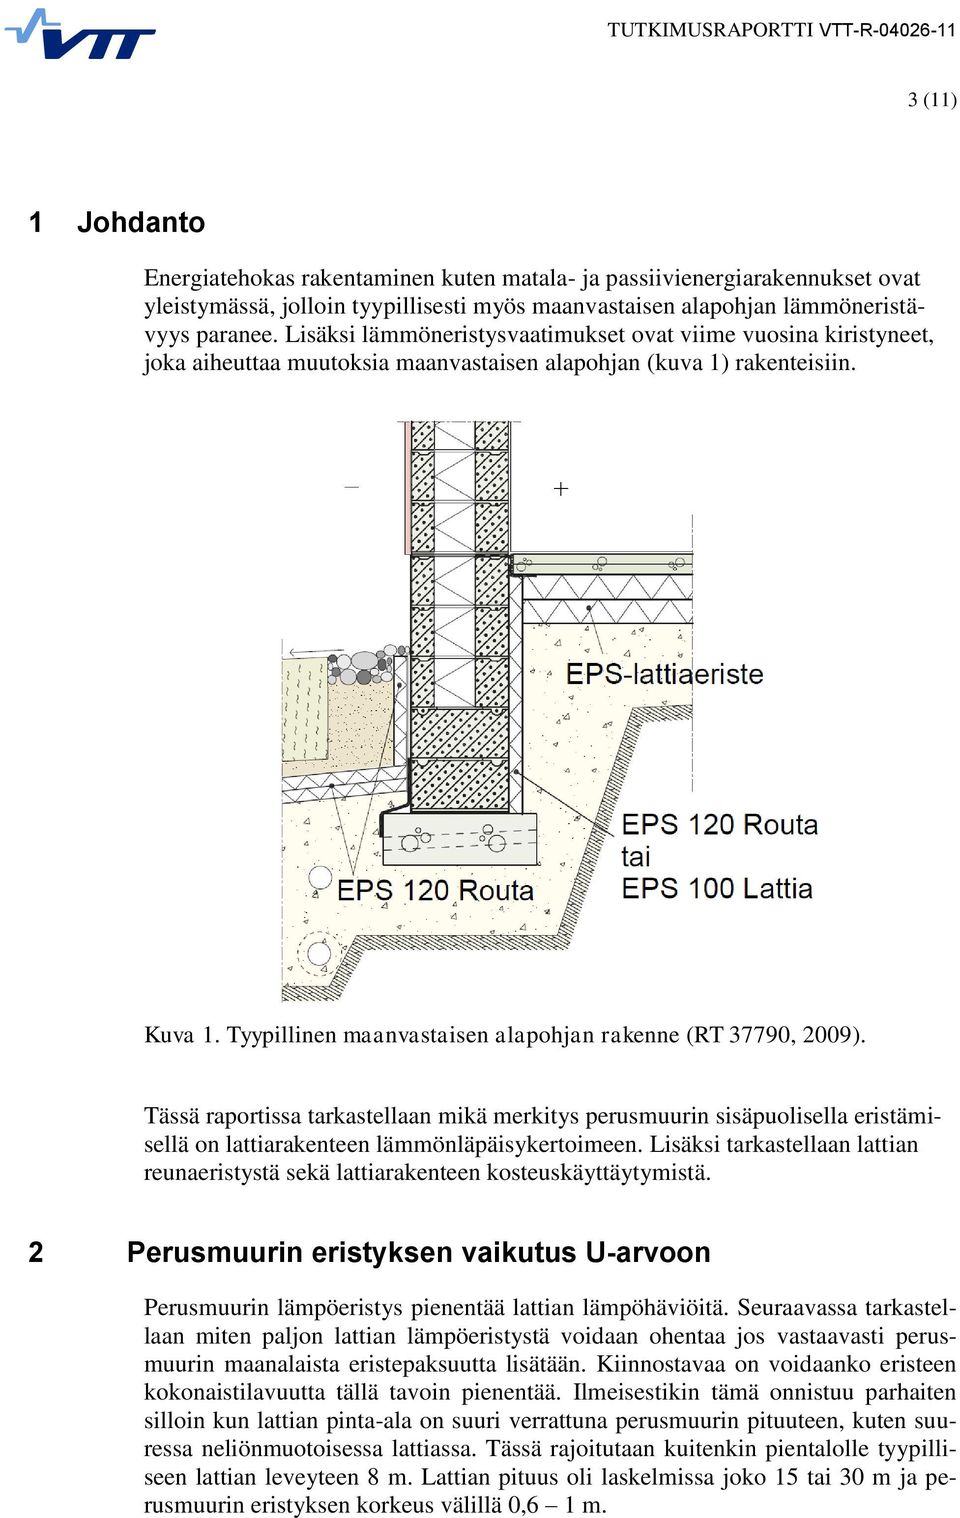 Tyypillinen maanvastaisen alapohjan rakenne (RT 37790, 2009). Tässä raportissa tarkastellaan mikä merkitys perusmuurin sisäpuolisella eristämisellä on lattiarakenteen lämmönläpäisykertoimeen.